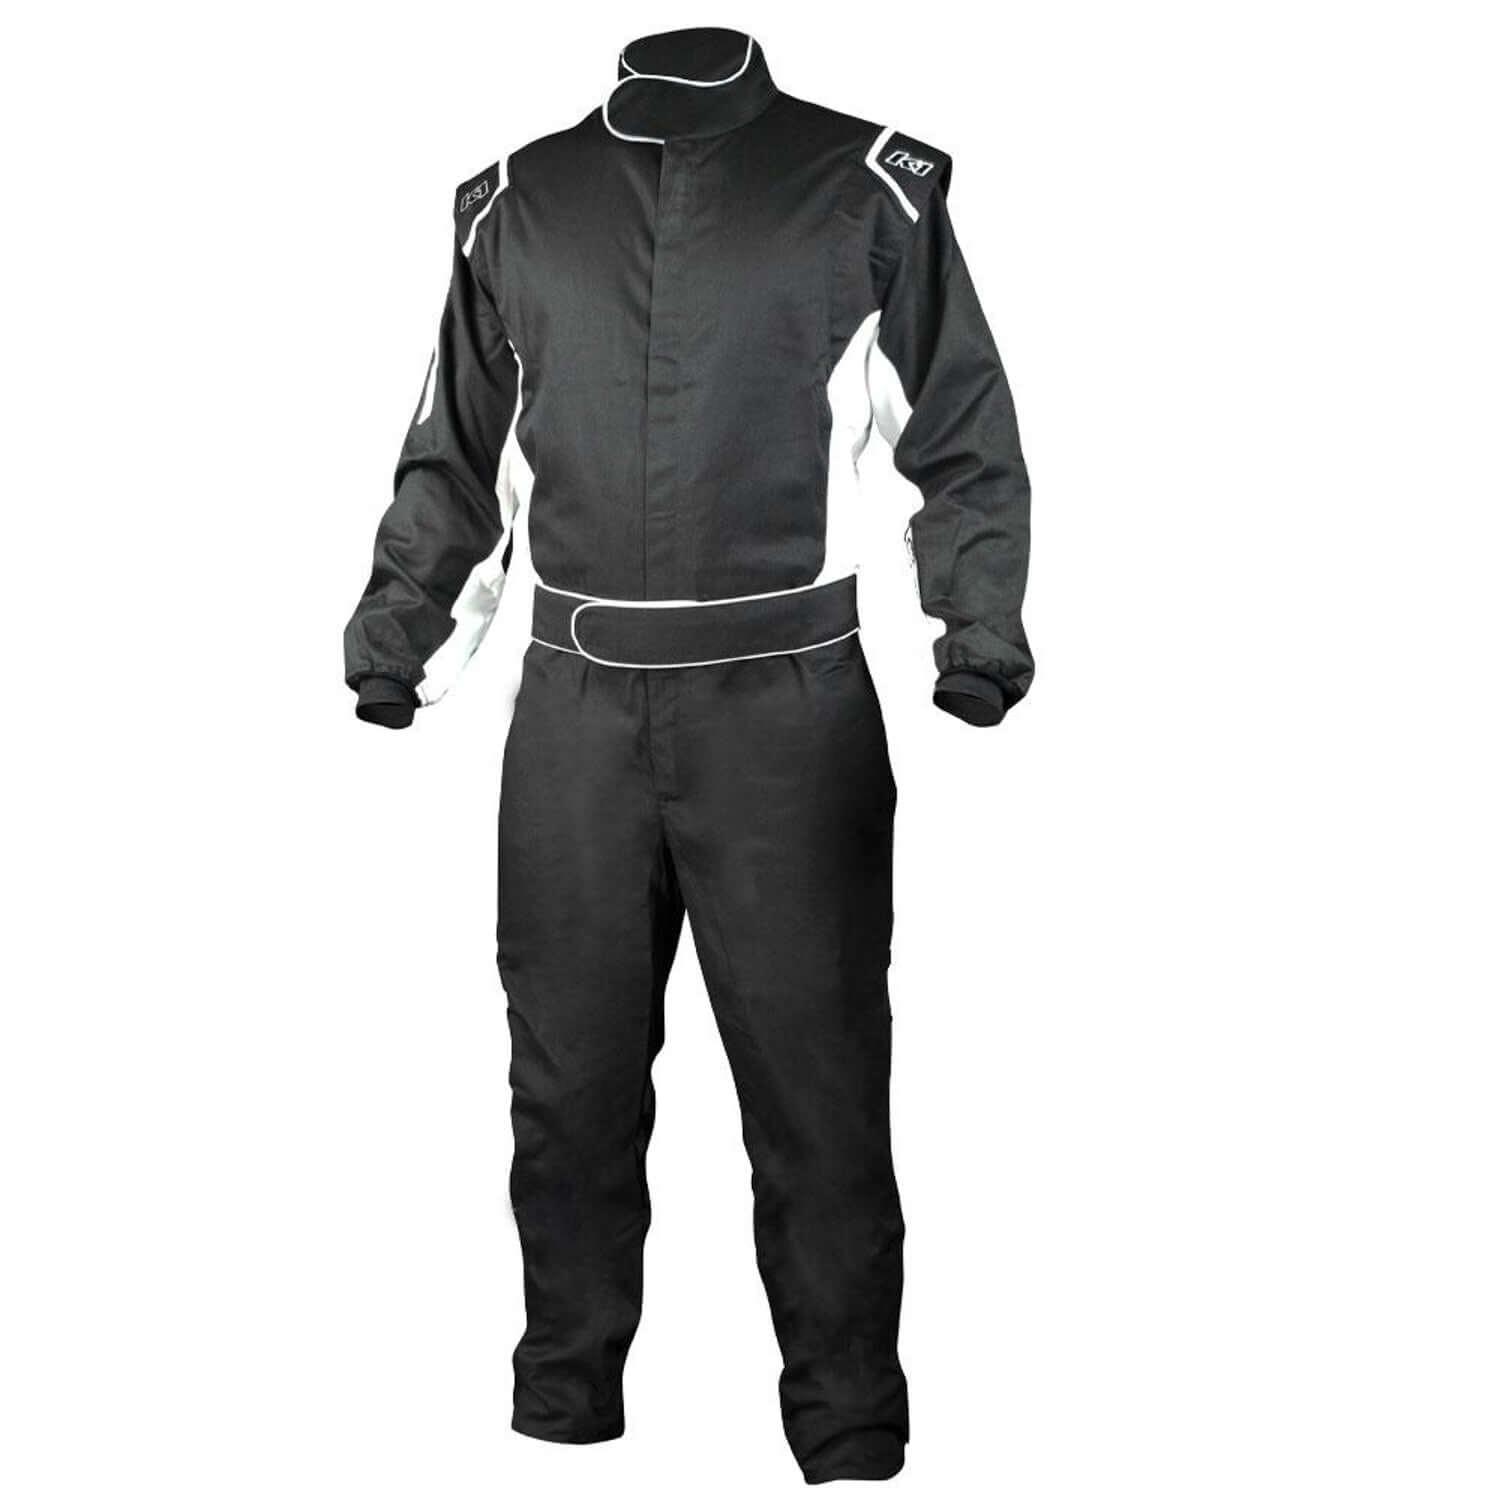 Challenger Racing Suit - $175.00